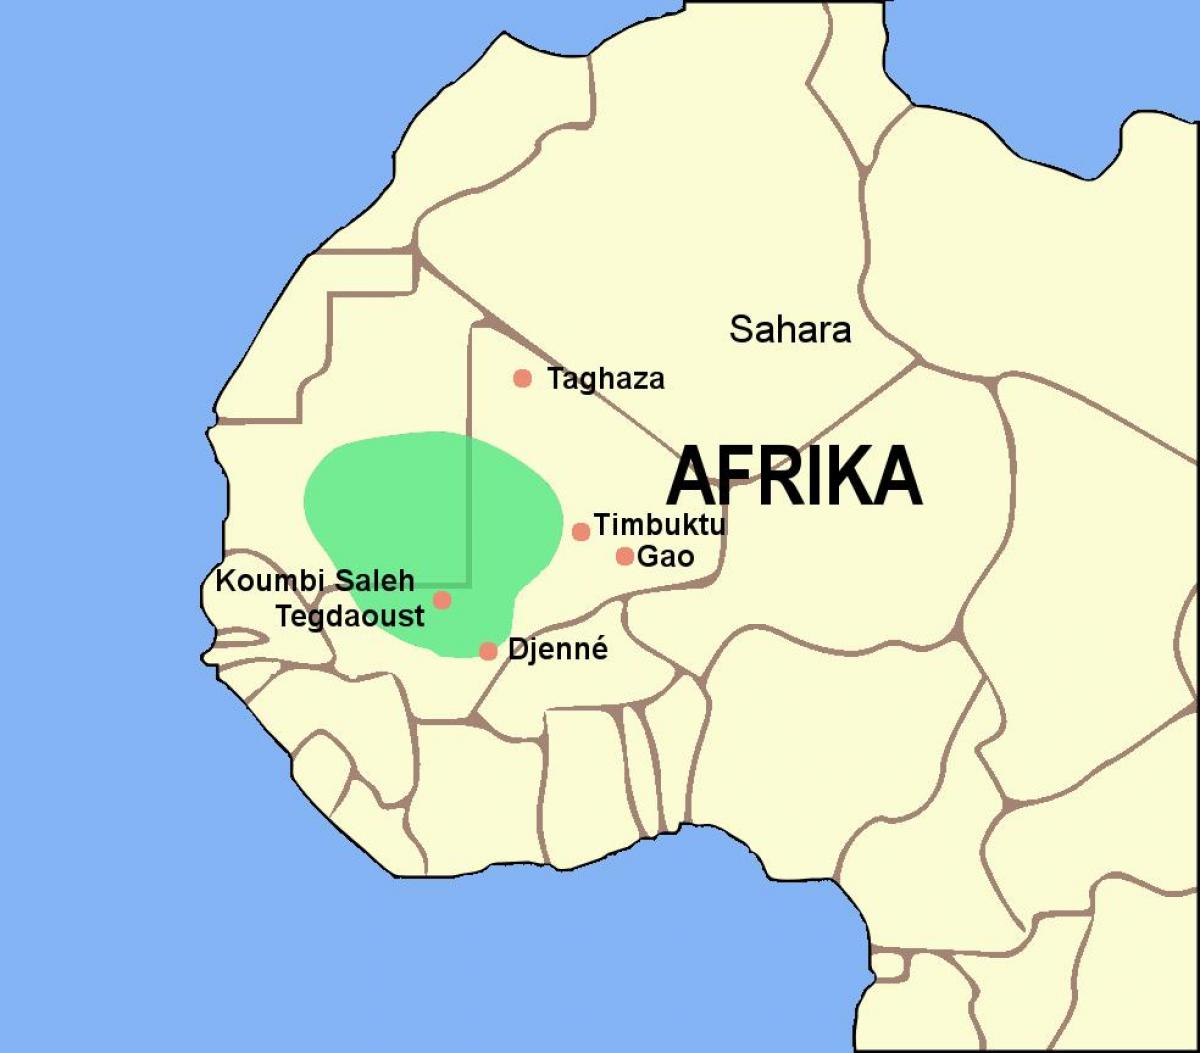 Karta carstva Gana